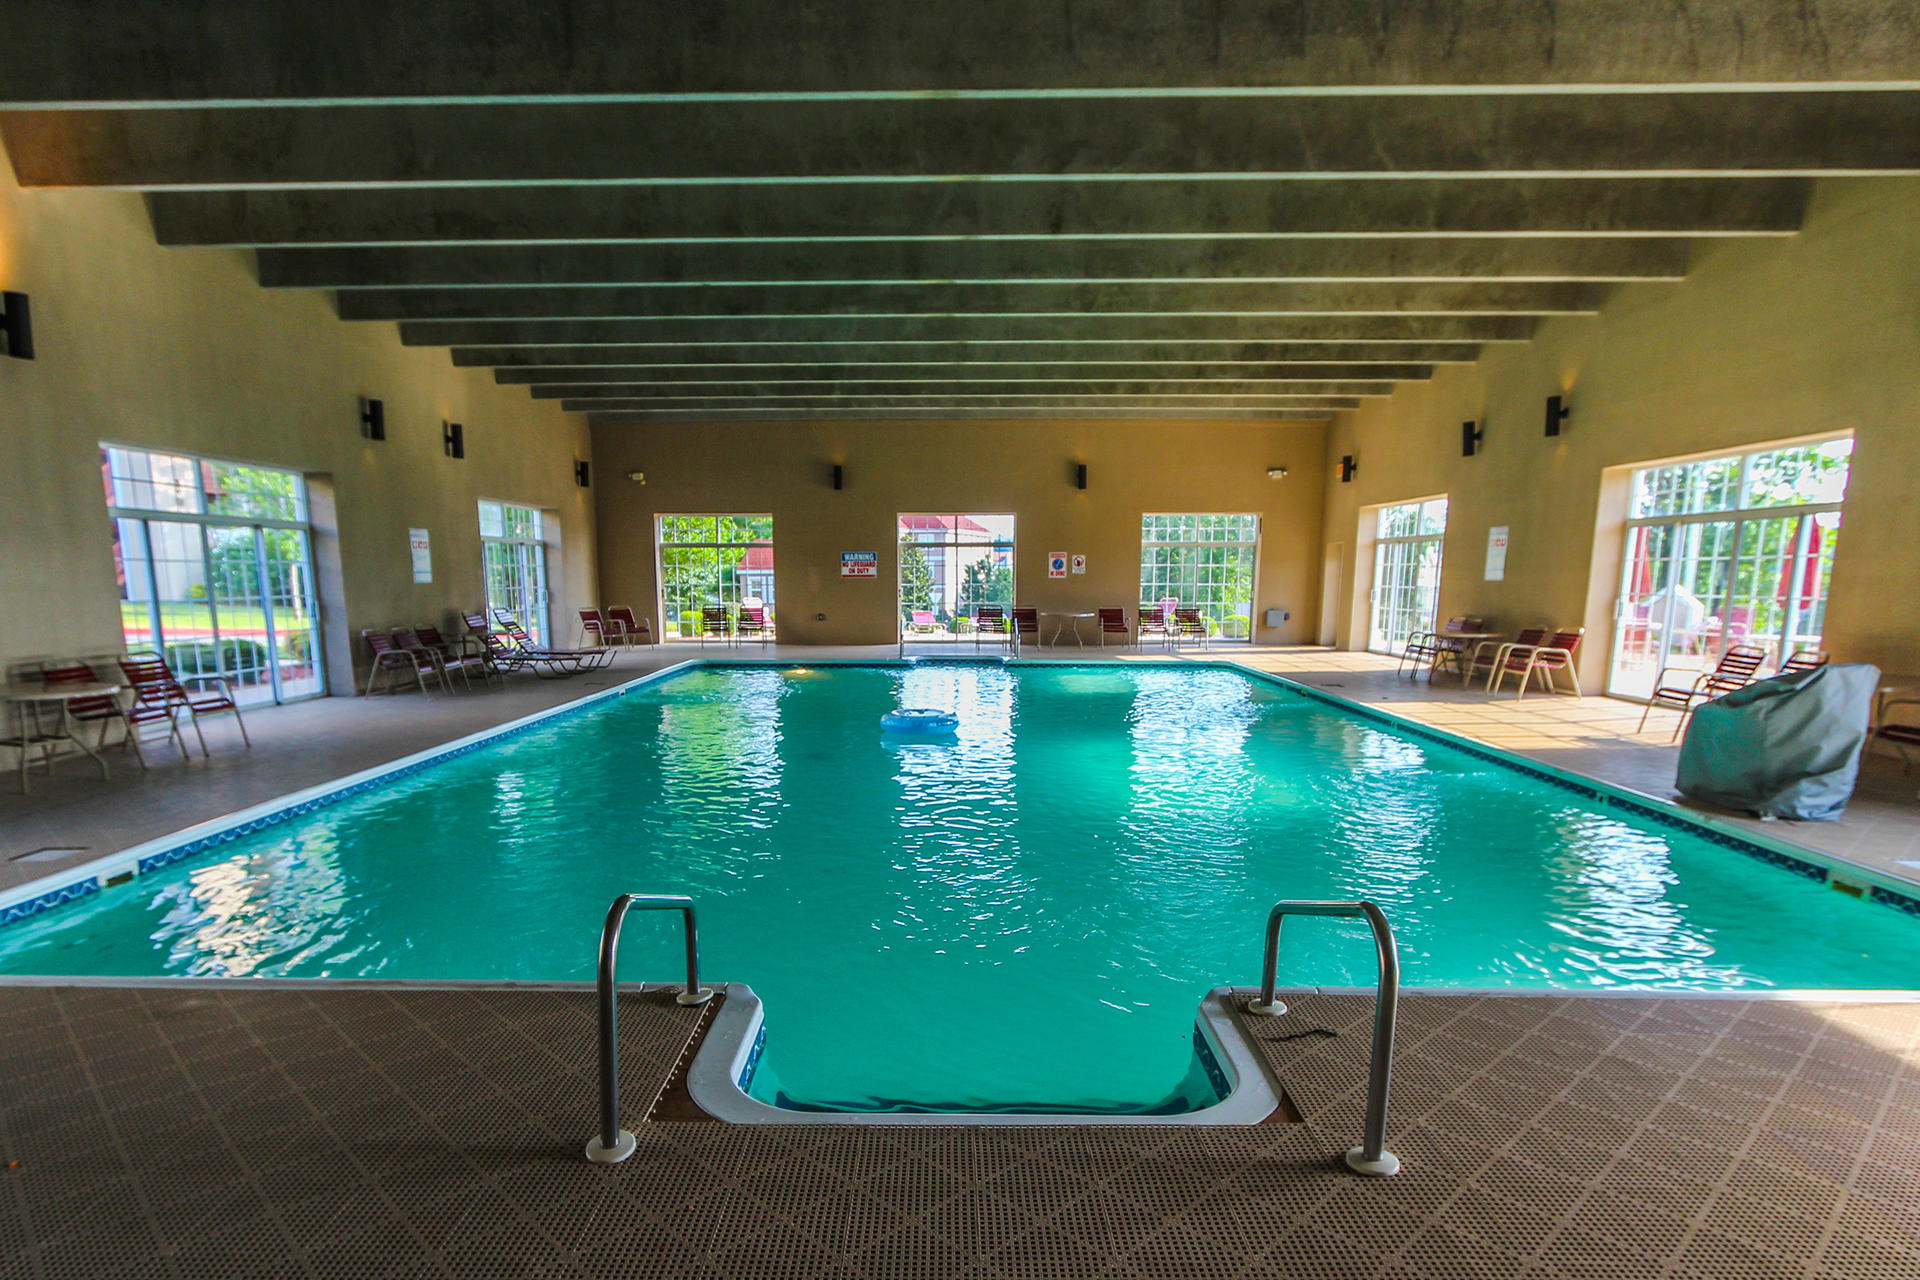 Grand Crowne Resort pool